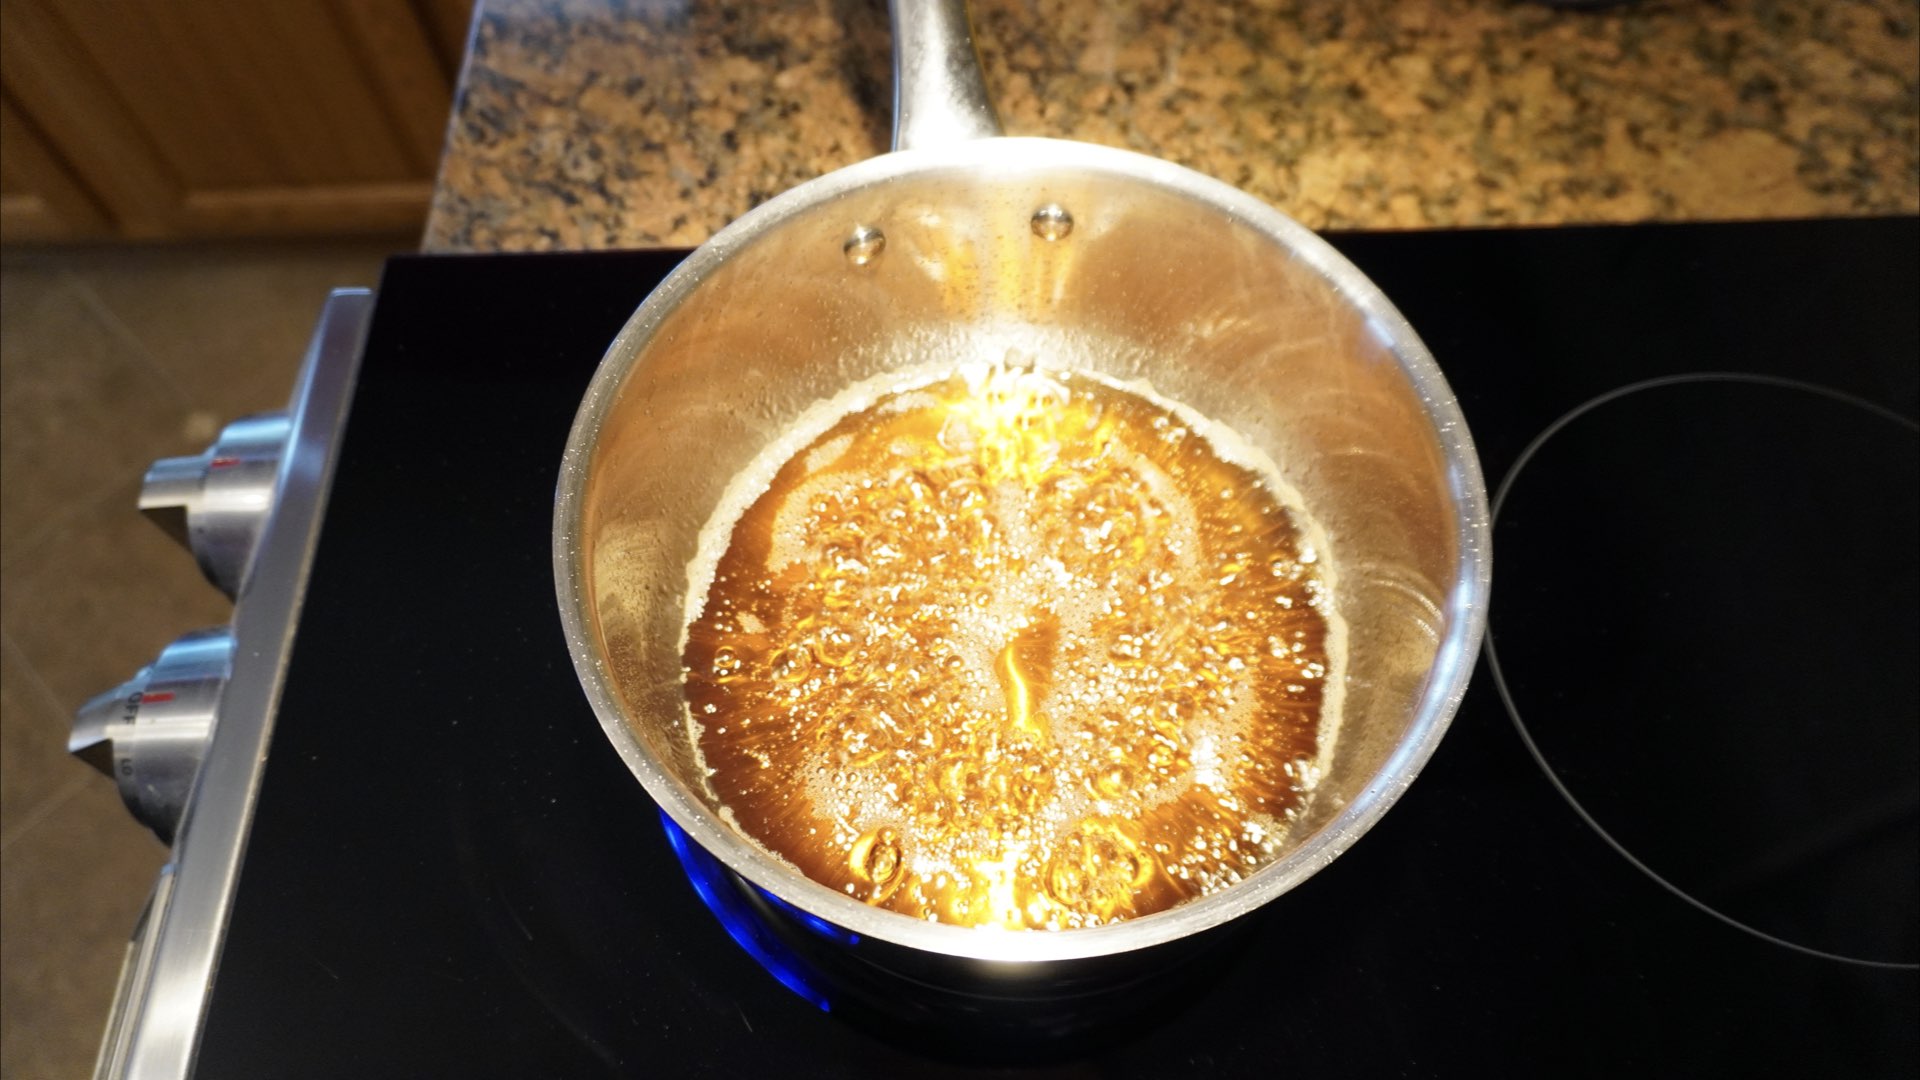 Pancake Syrup